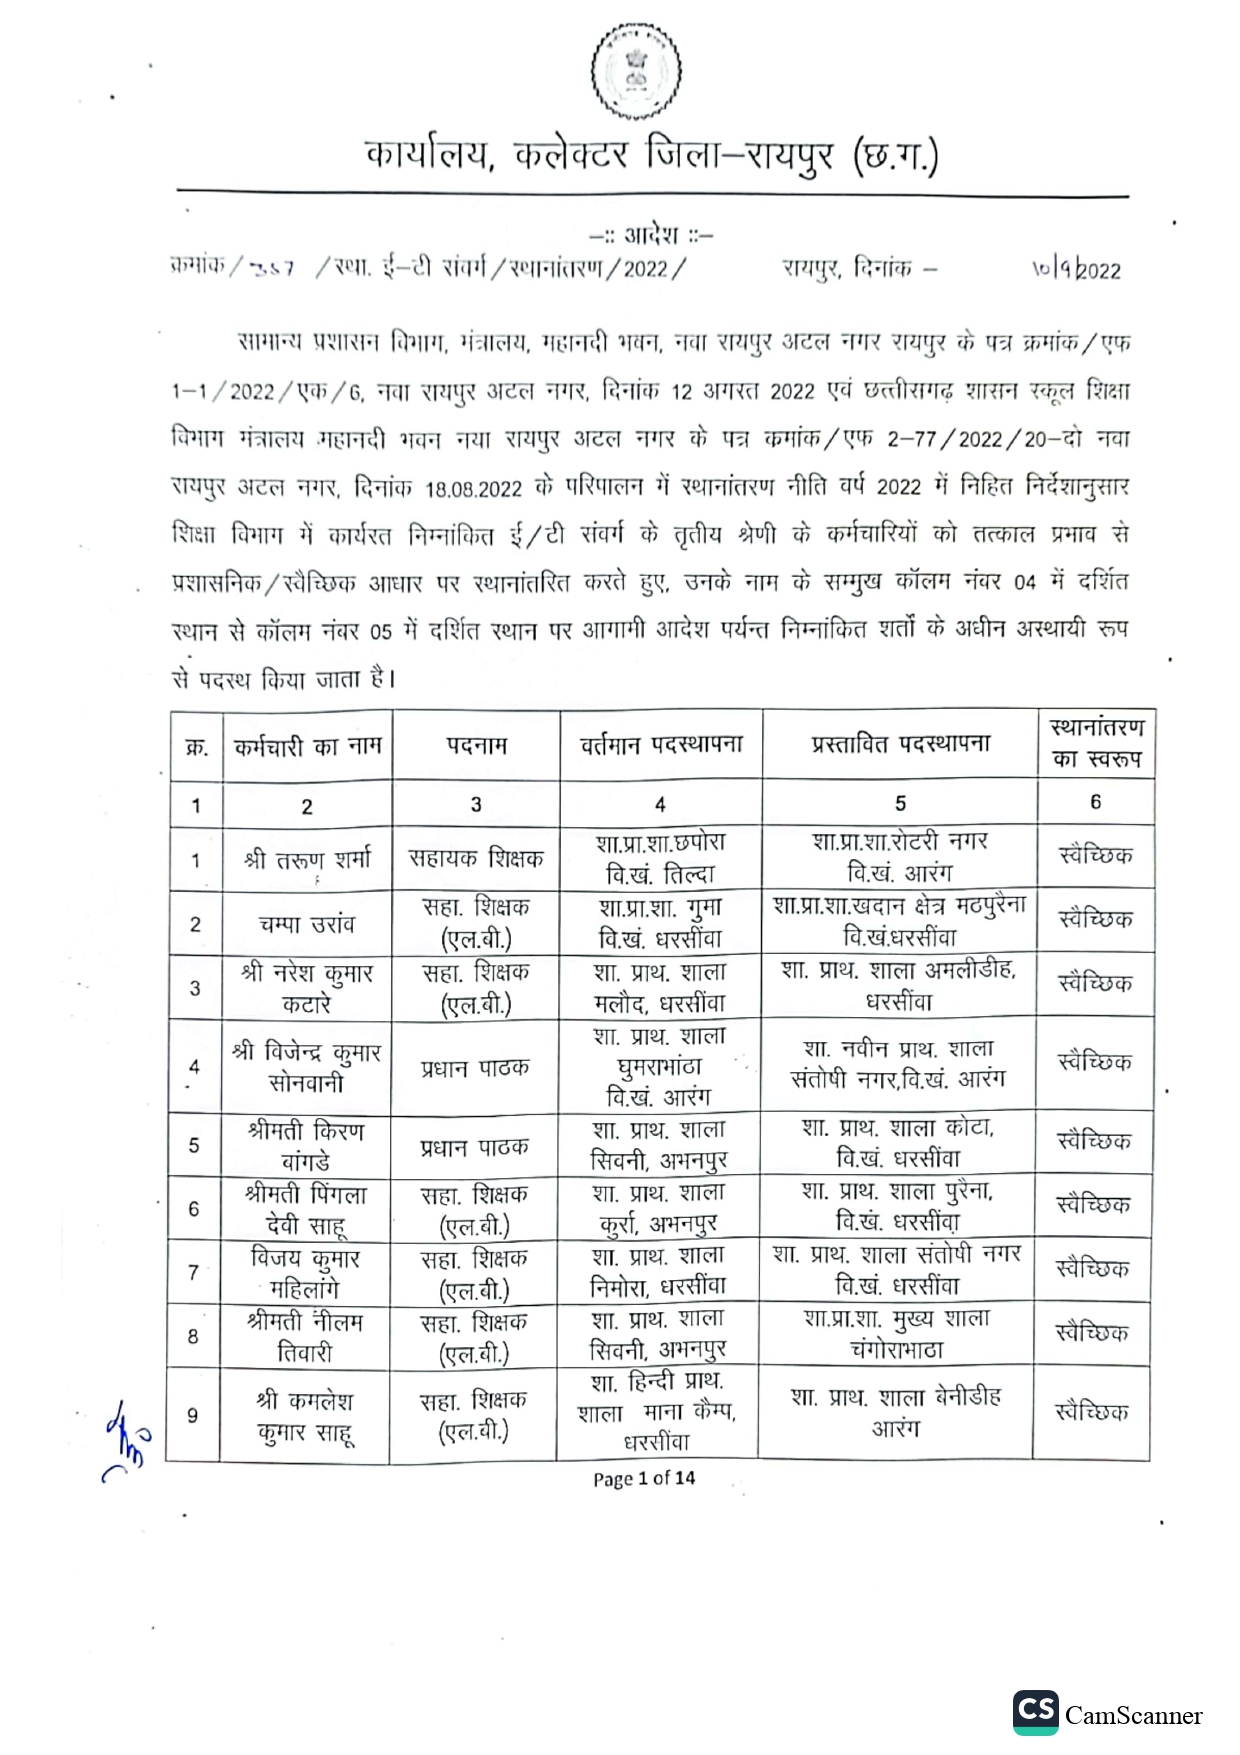 रायपुर जिले के कर्मचारियों की तबादला सूची जारी